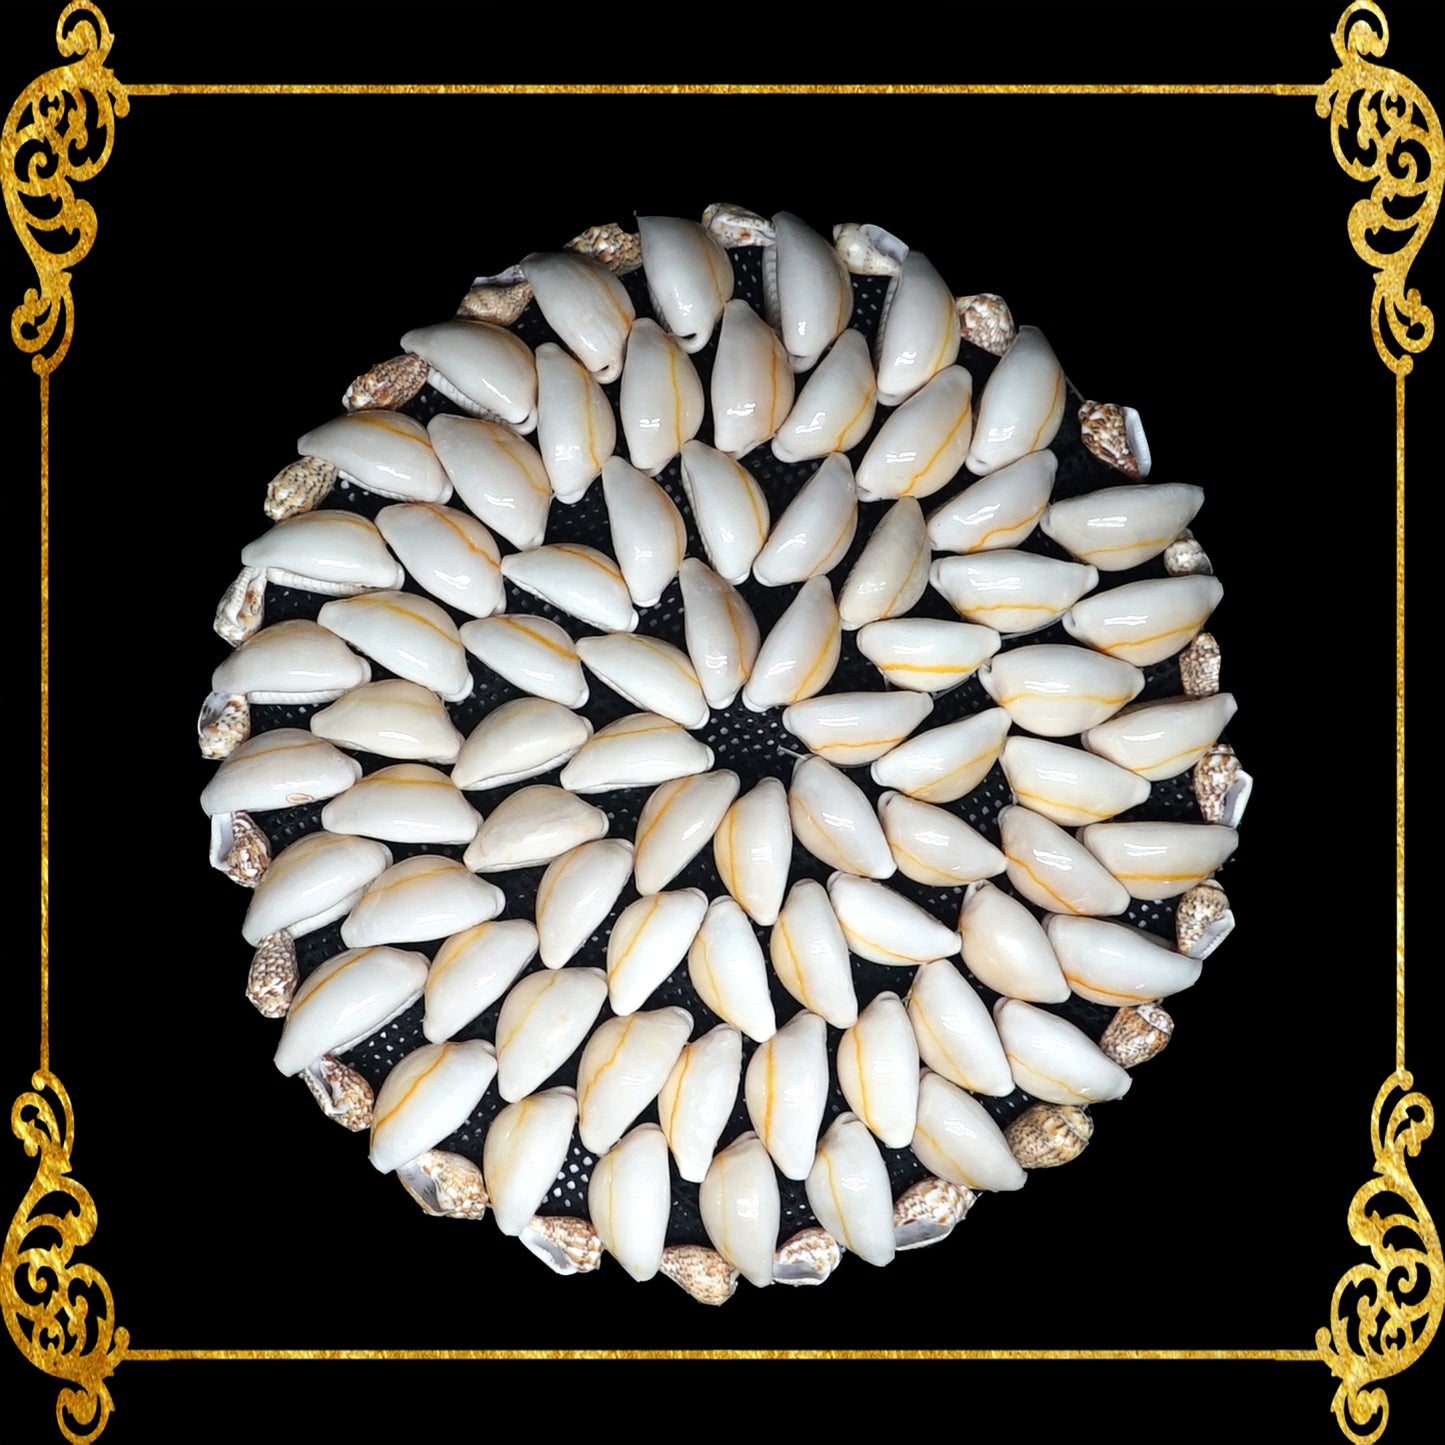 Coaster Made of Cowry Shells Design